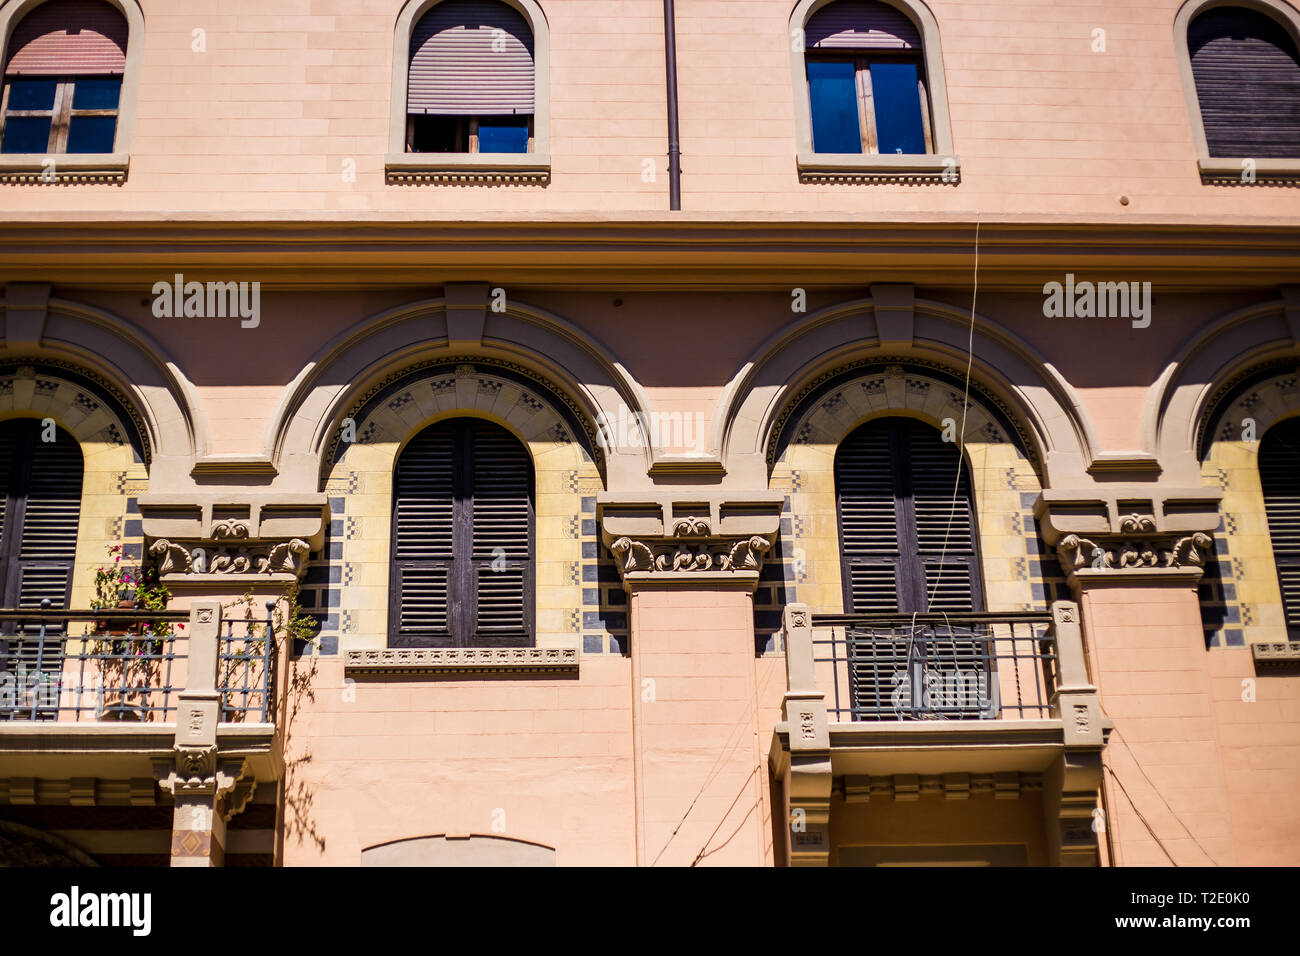 Messina, Sicilia, Italia.Un edificio de color arena con balcones con barandillas de hierro forjado. Foto de stock